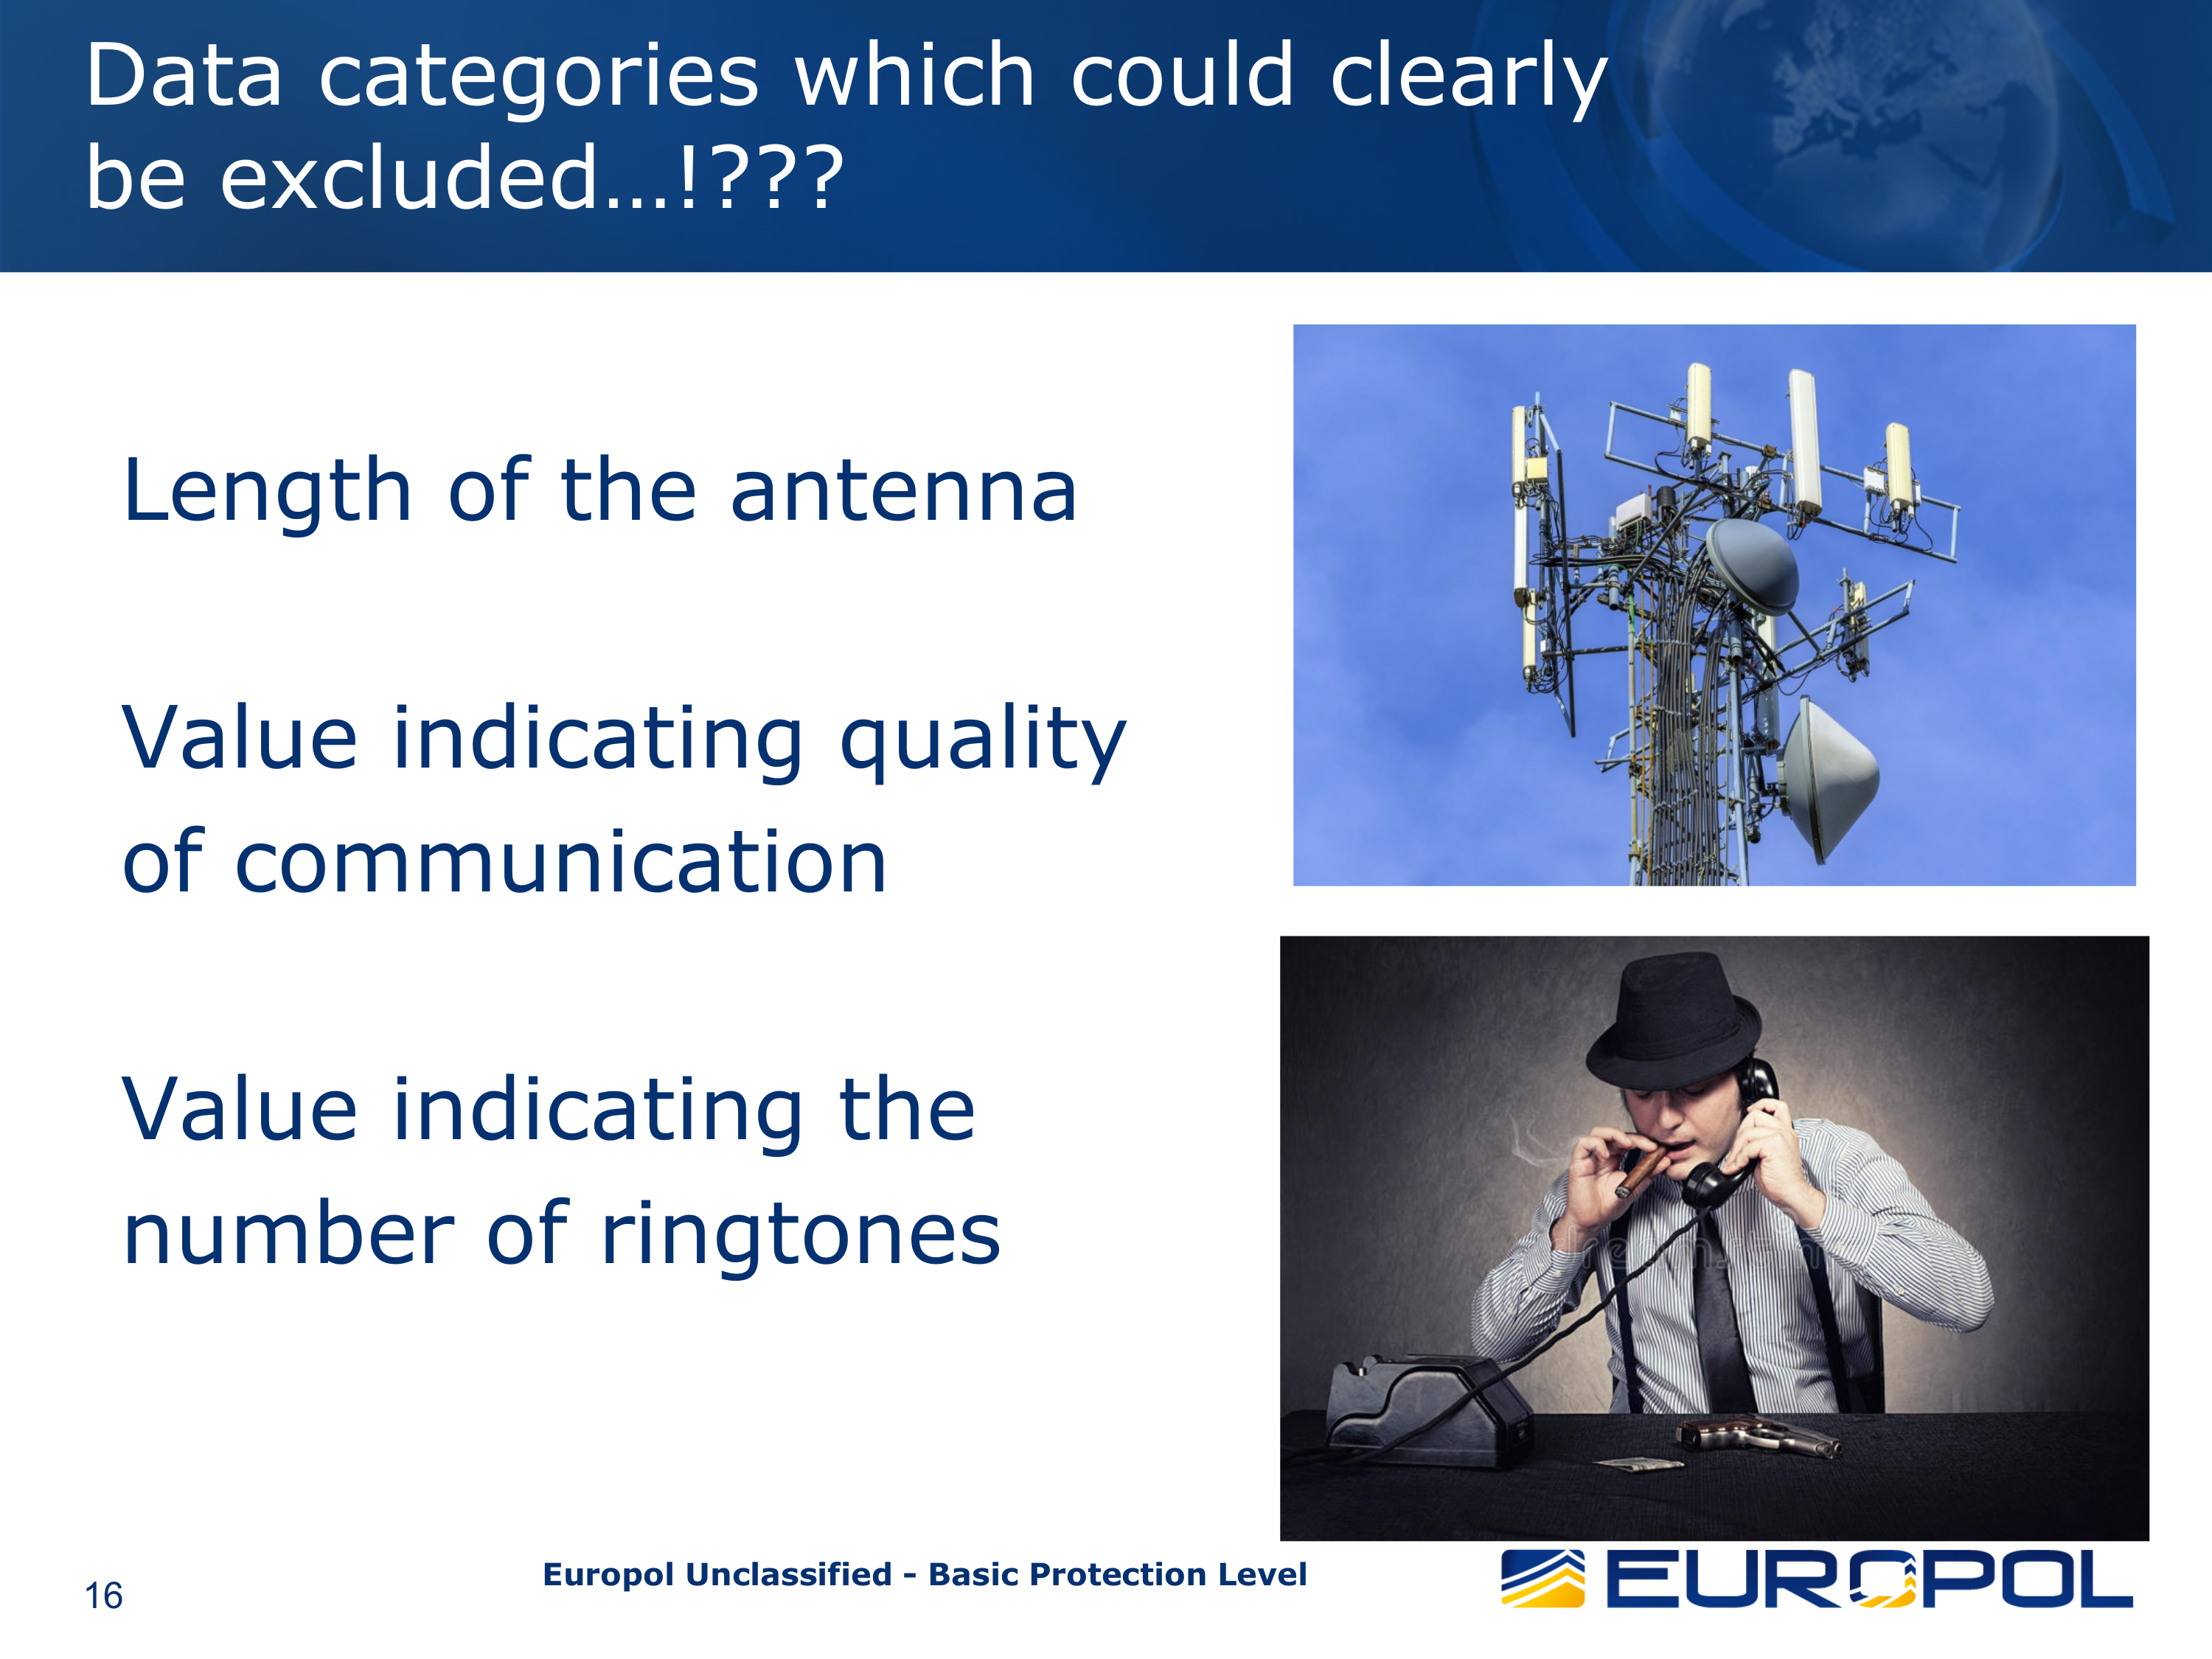 Aus der veröffentlichten Europol-Präsentation: Die Länge der Antenne, die Qualität der Übertragung und die Anzahl der Klingeltöne sind nicht relevant genug, um gespeichert zu werden.